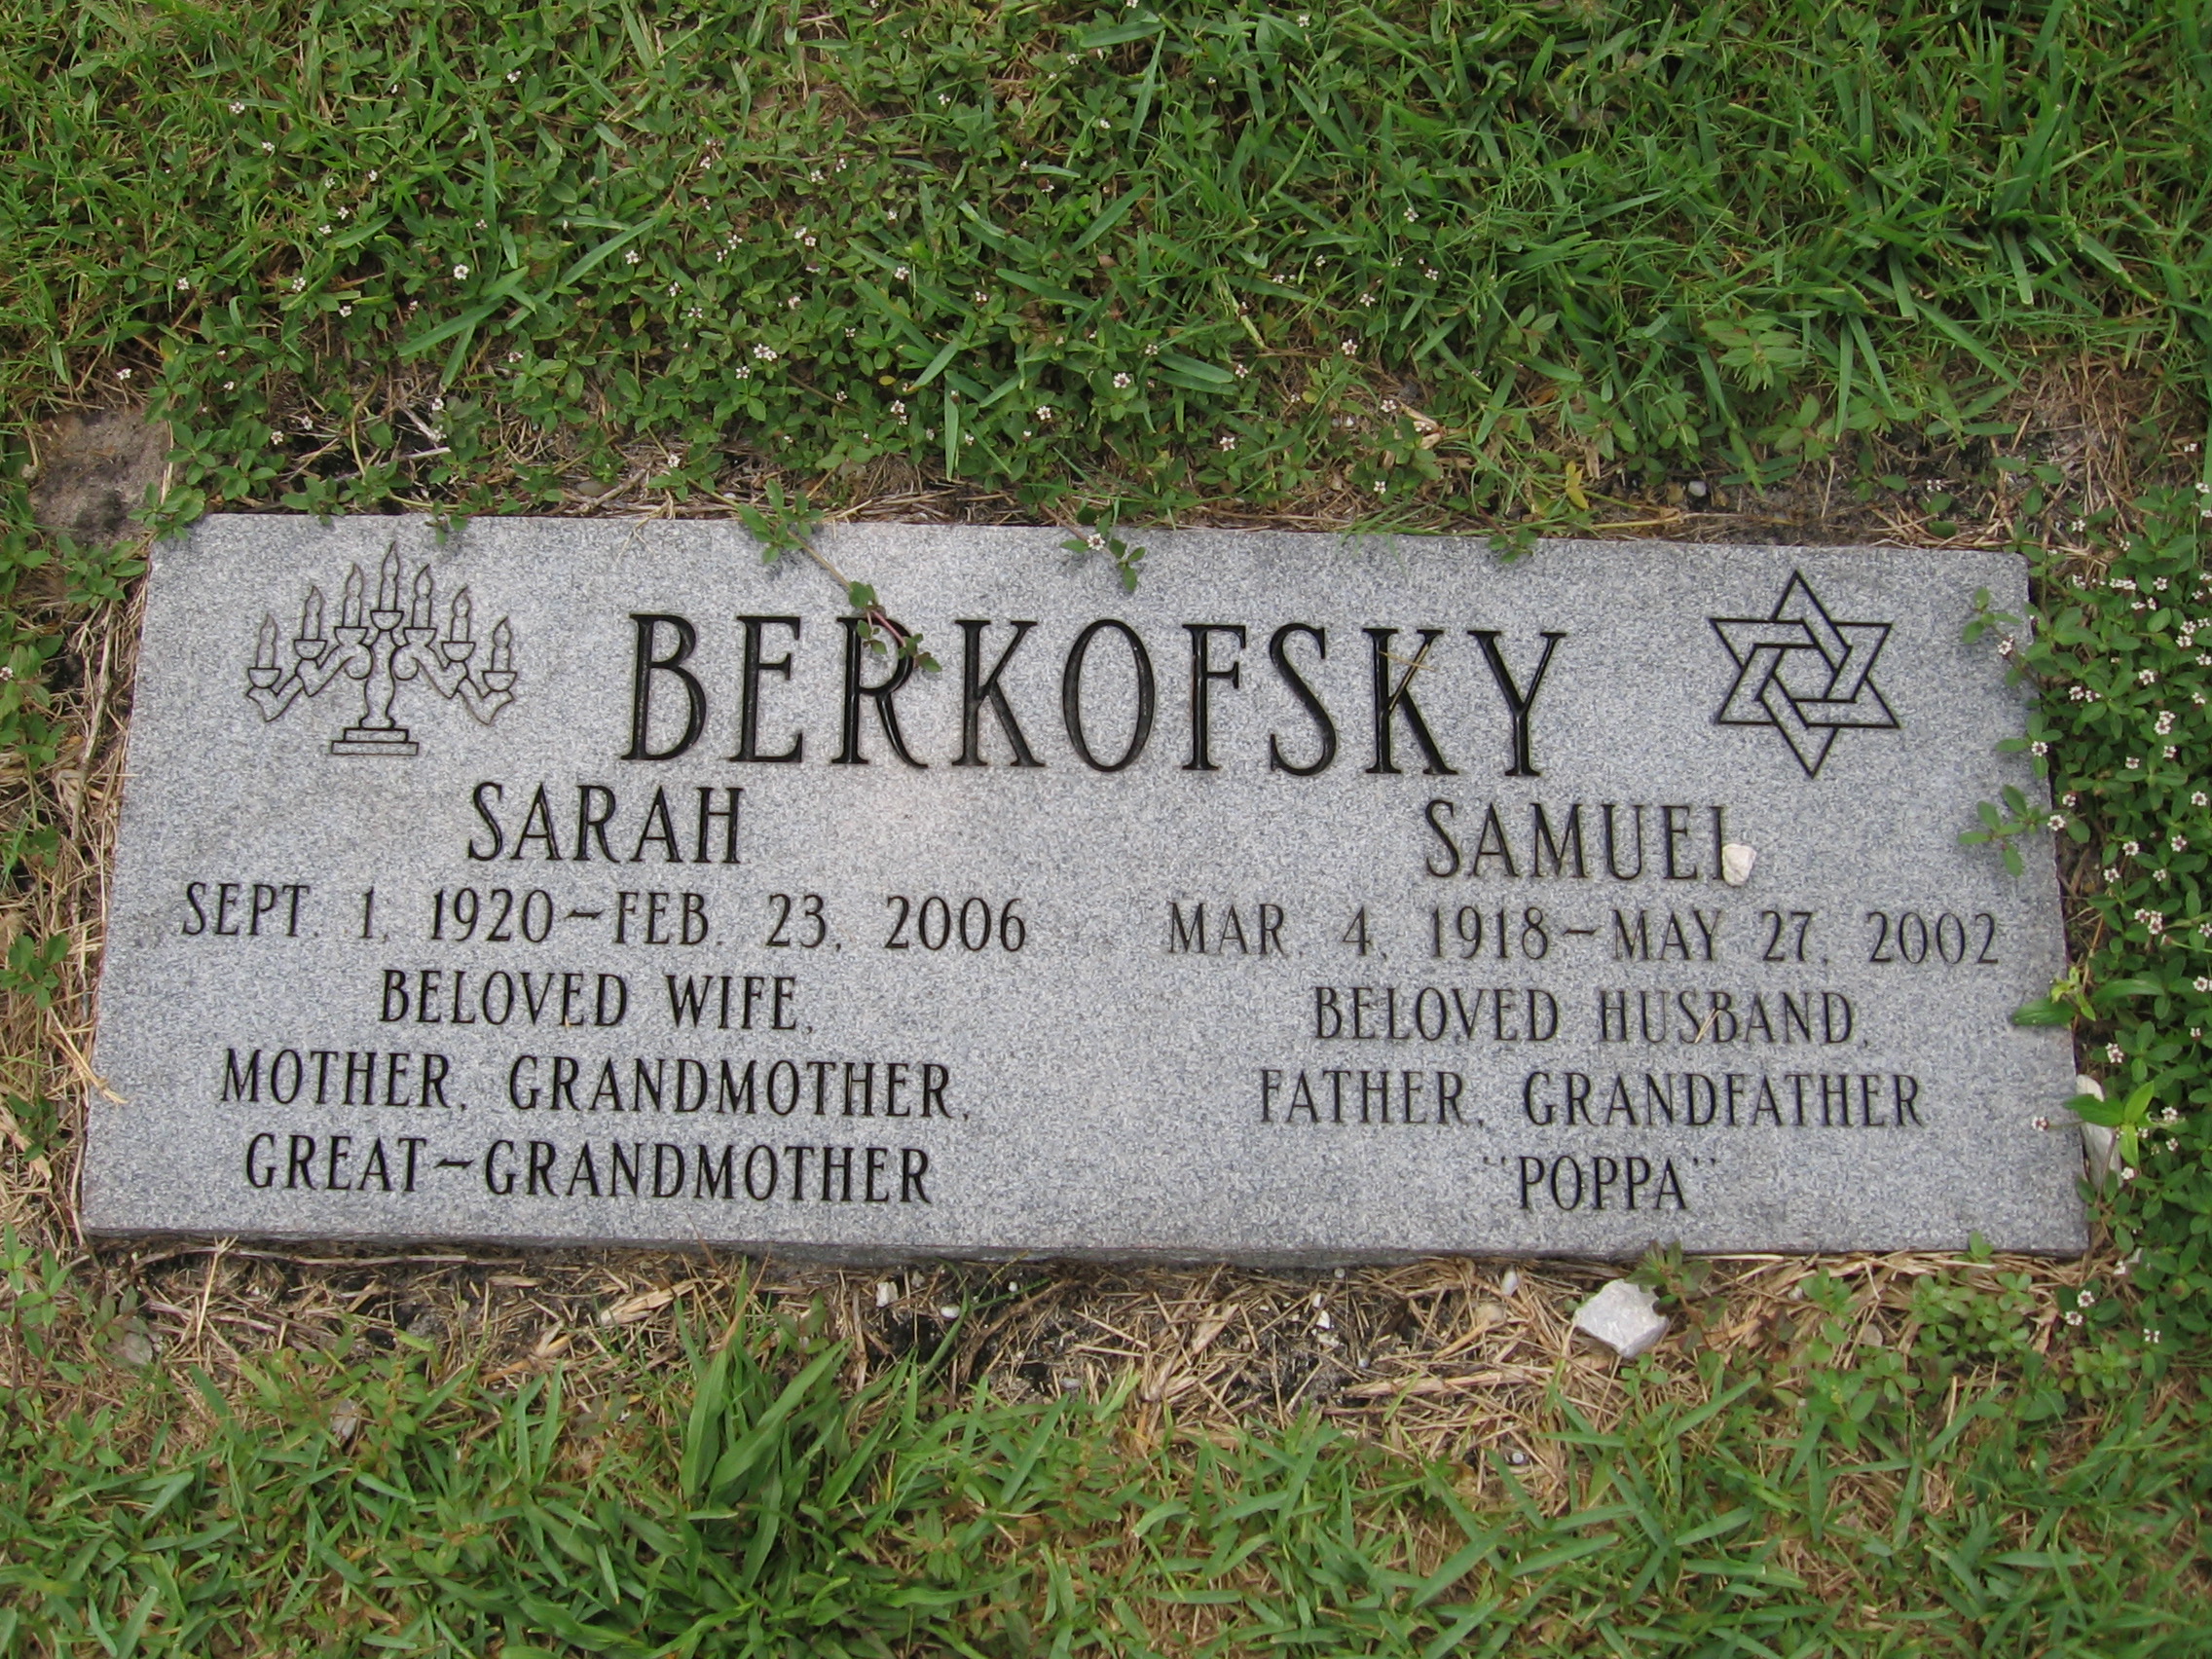 Sarah Berkofsky